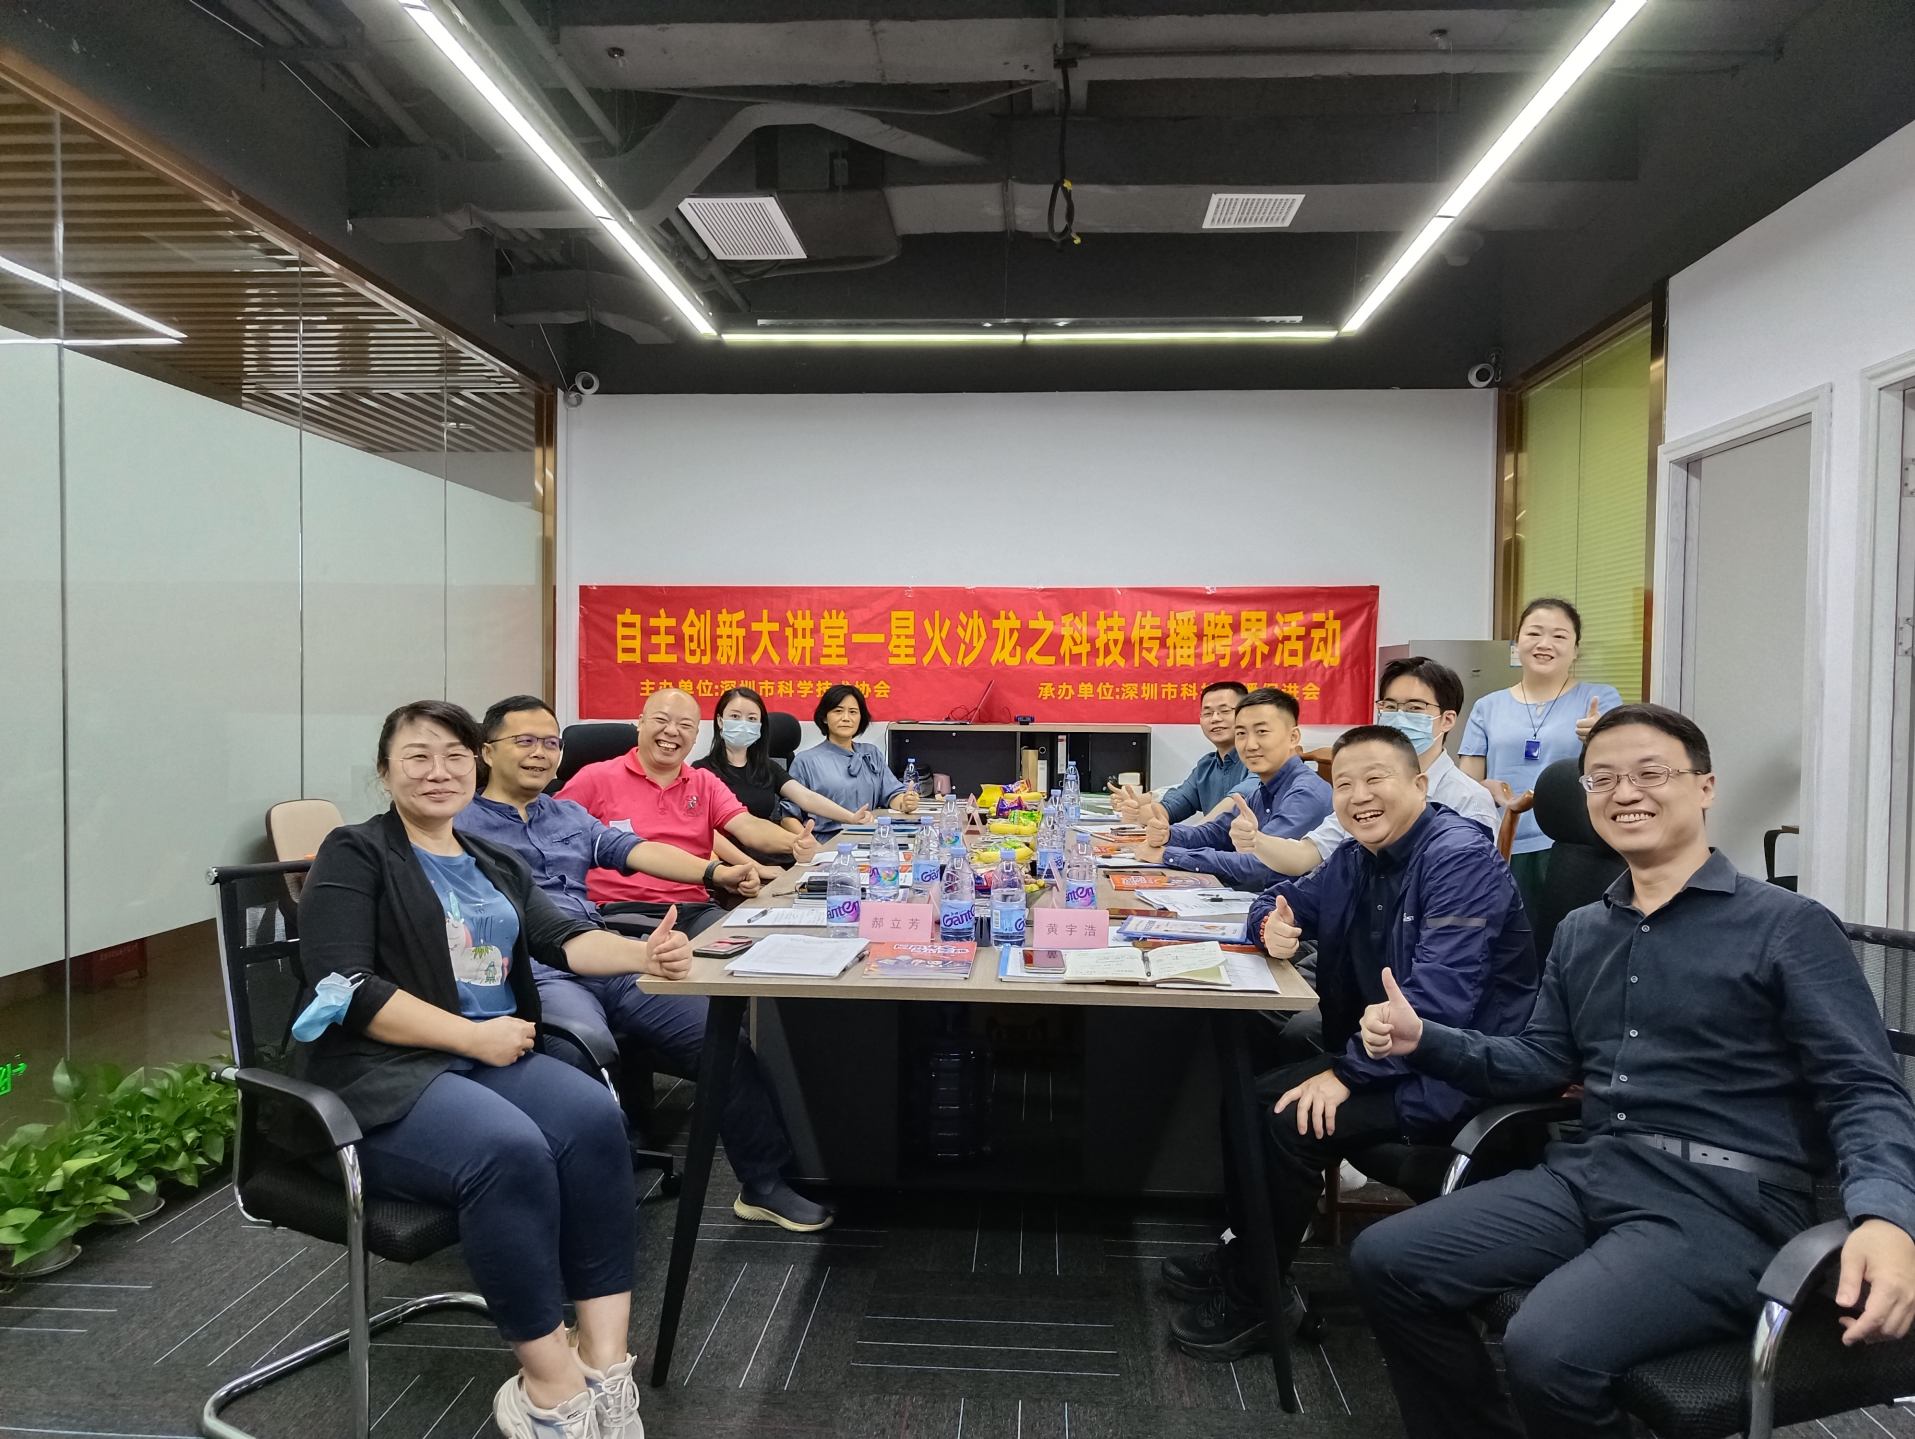 自主创新大讲堂——星火沙龙之科技传播跨界活动在深圳举办